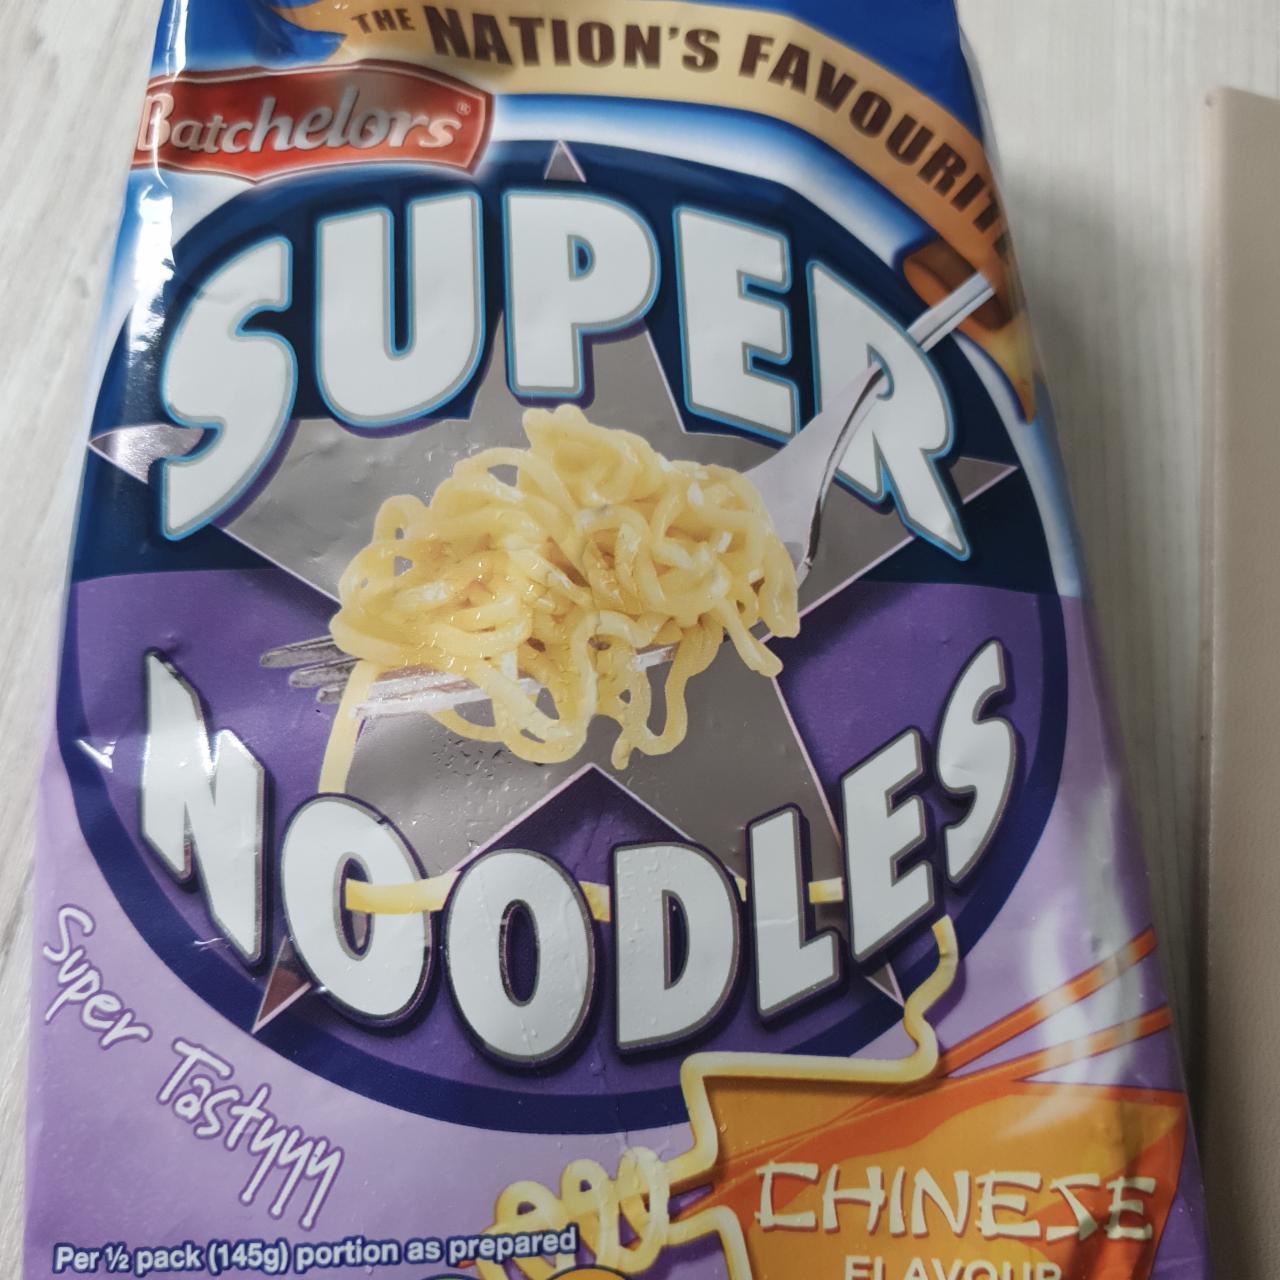 Fotografie - Super Noodles Chinese Flavour Batchelors